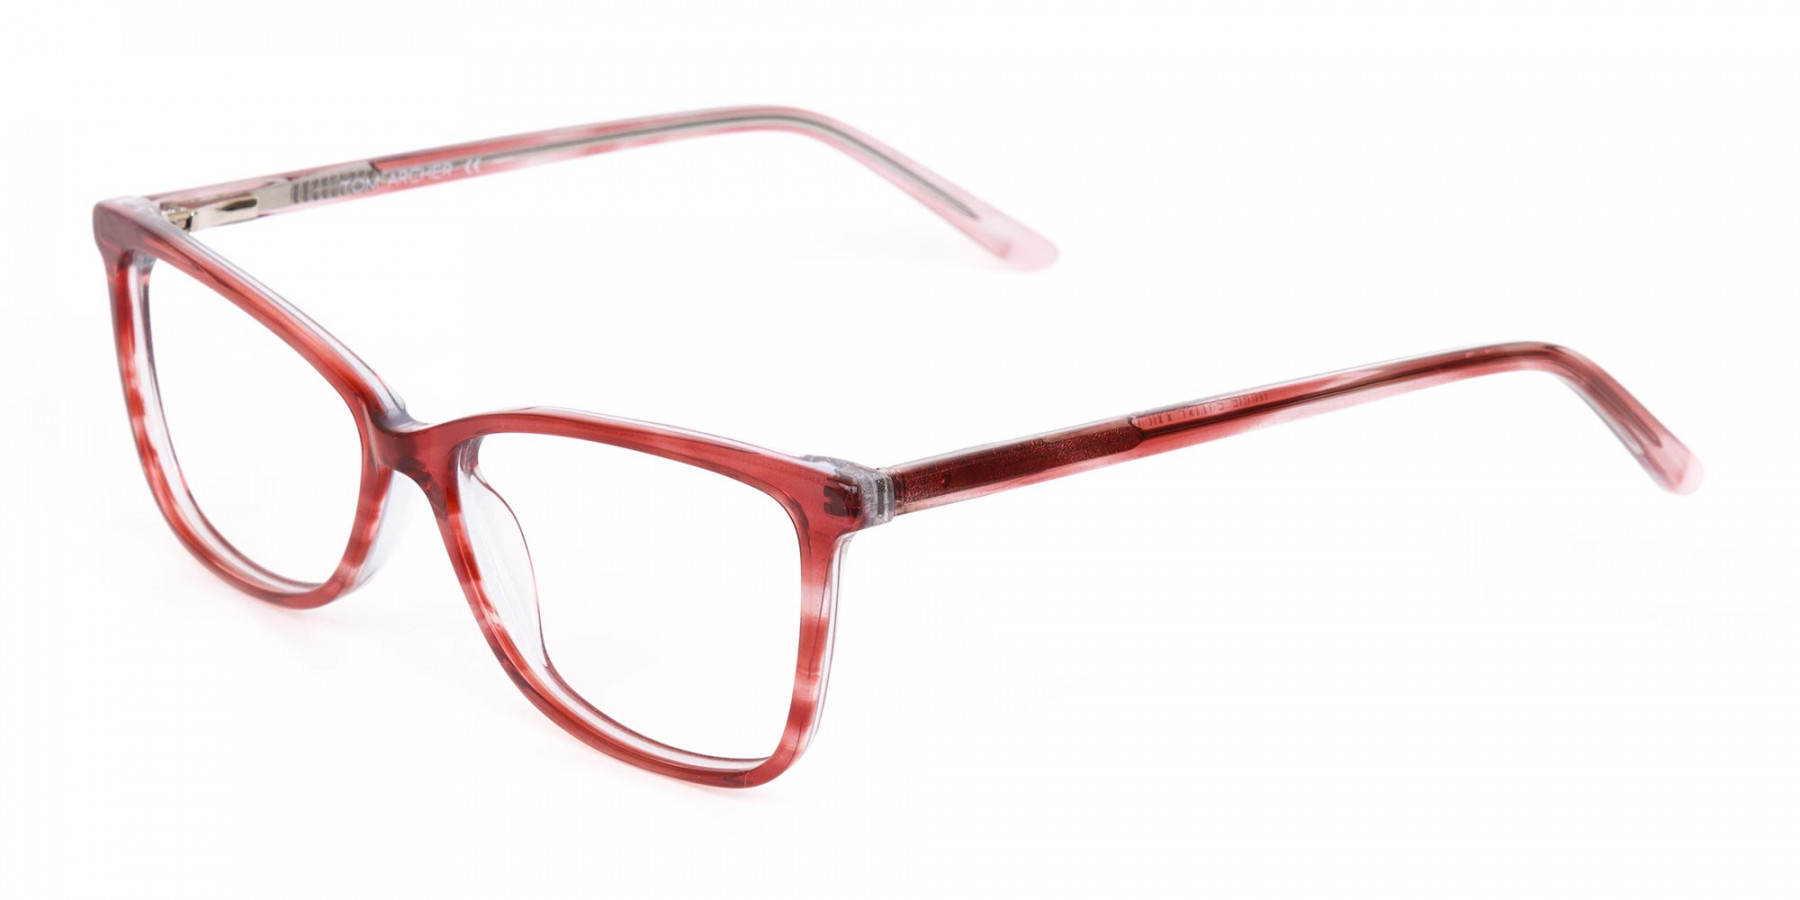 MELLOR 2 - Translucent Rose Red Cat Eye Glasses Women